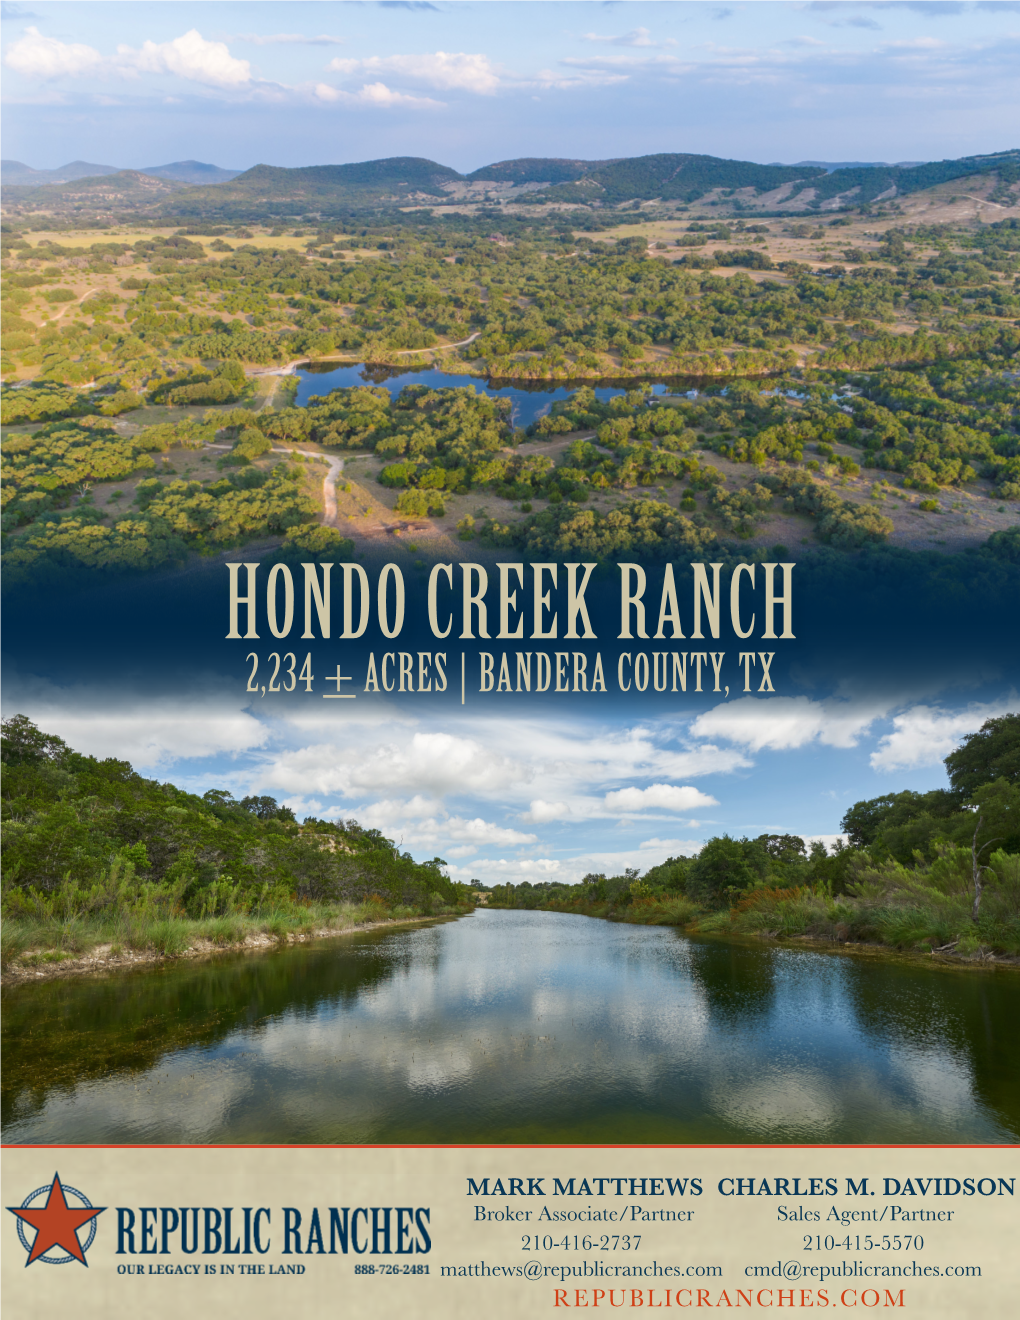 Hondo Creek Ranch 2,234 + Acres | Bandera County, Tx